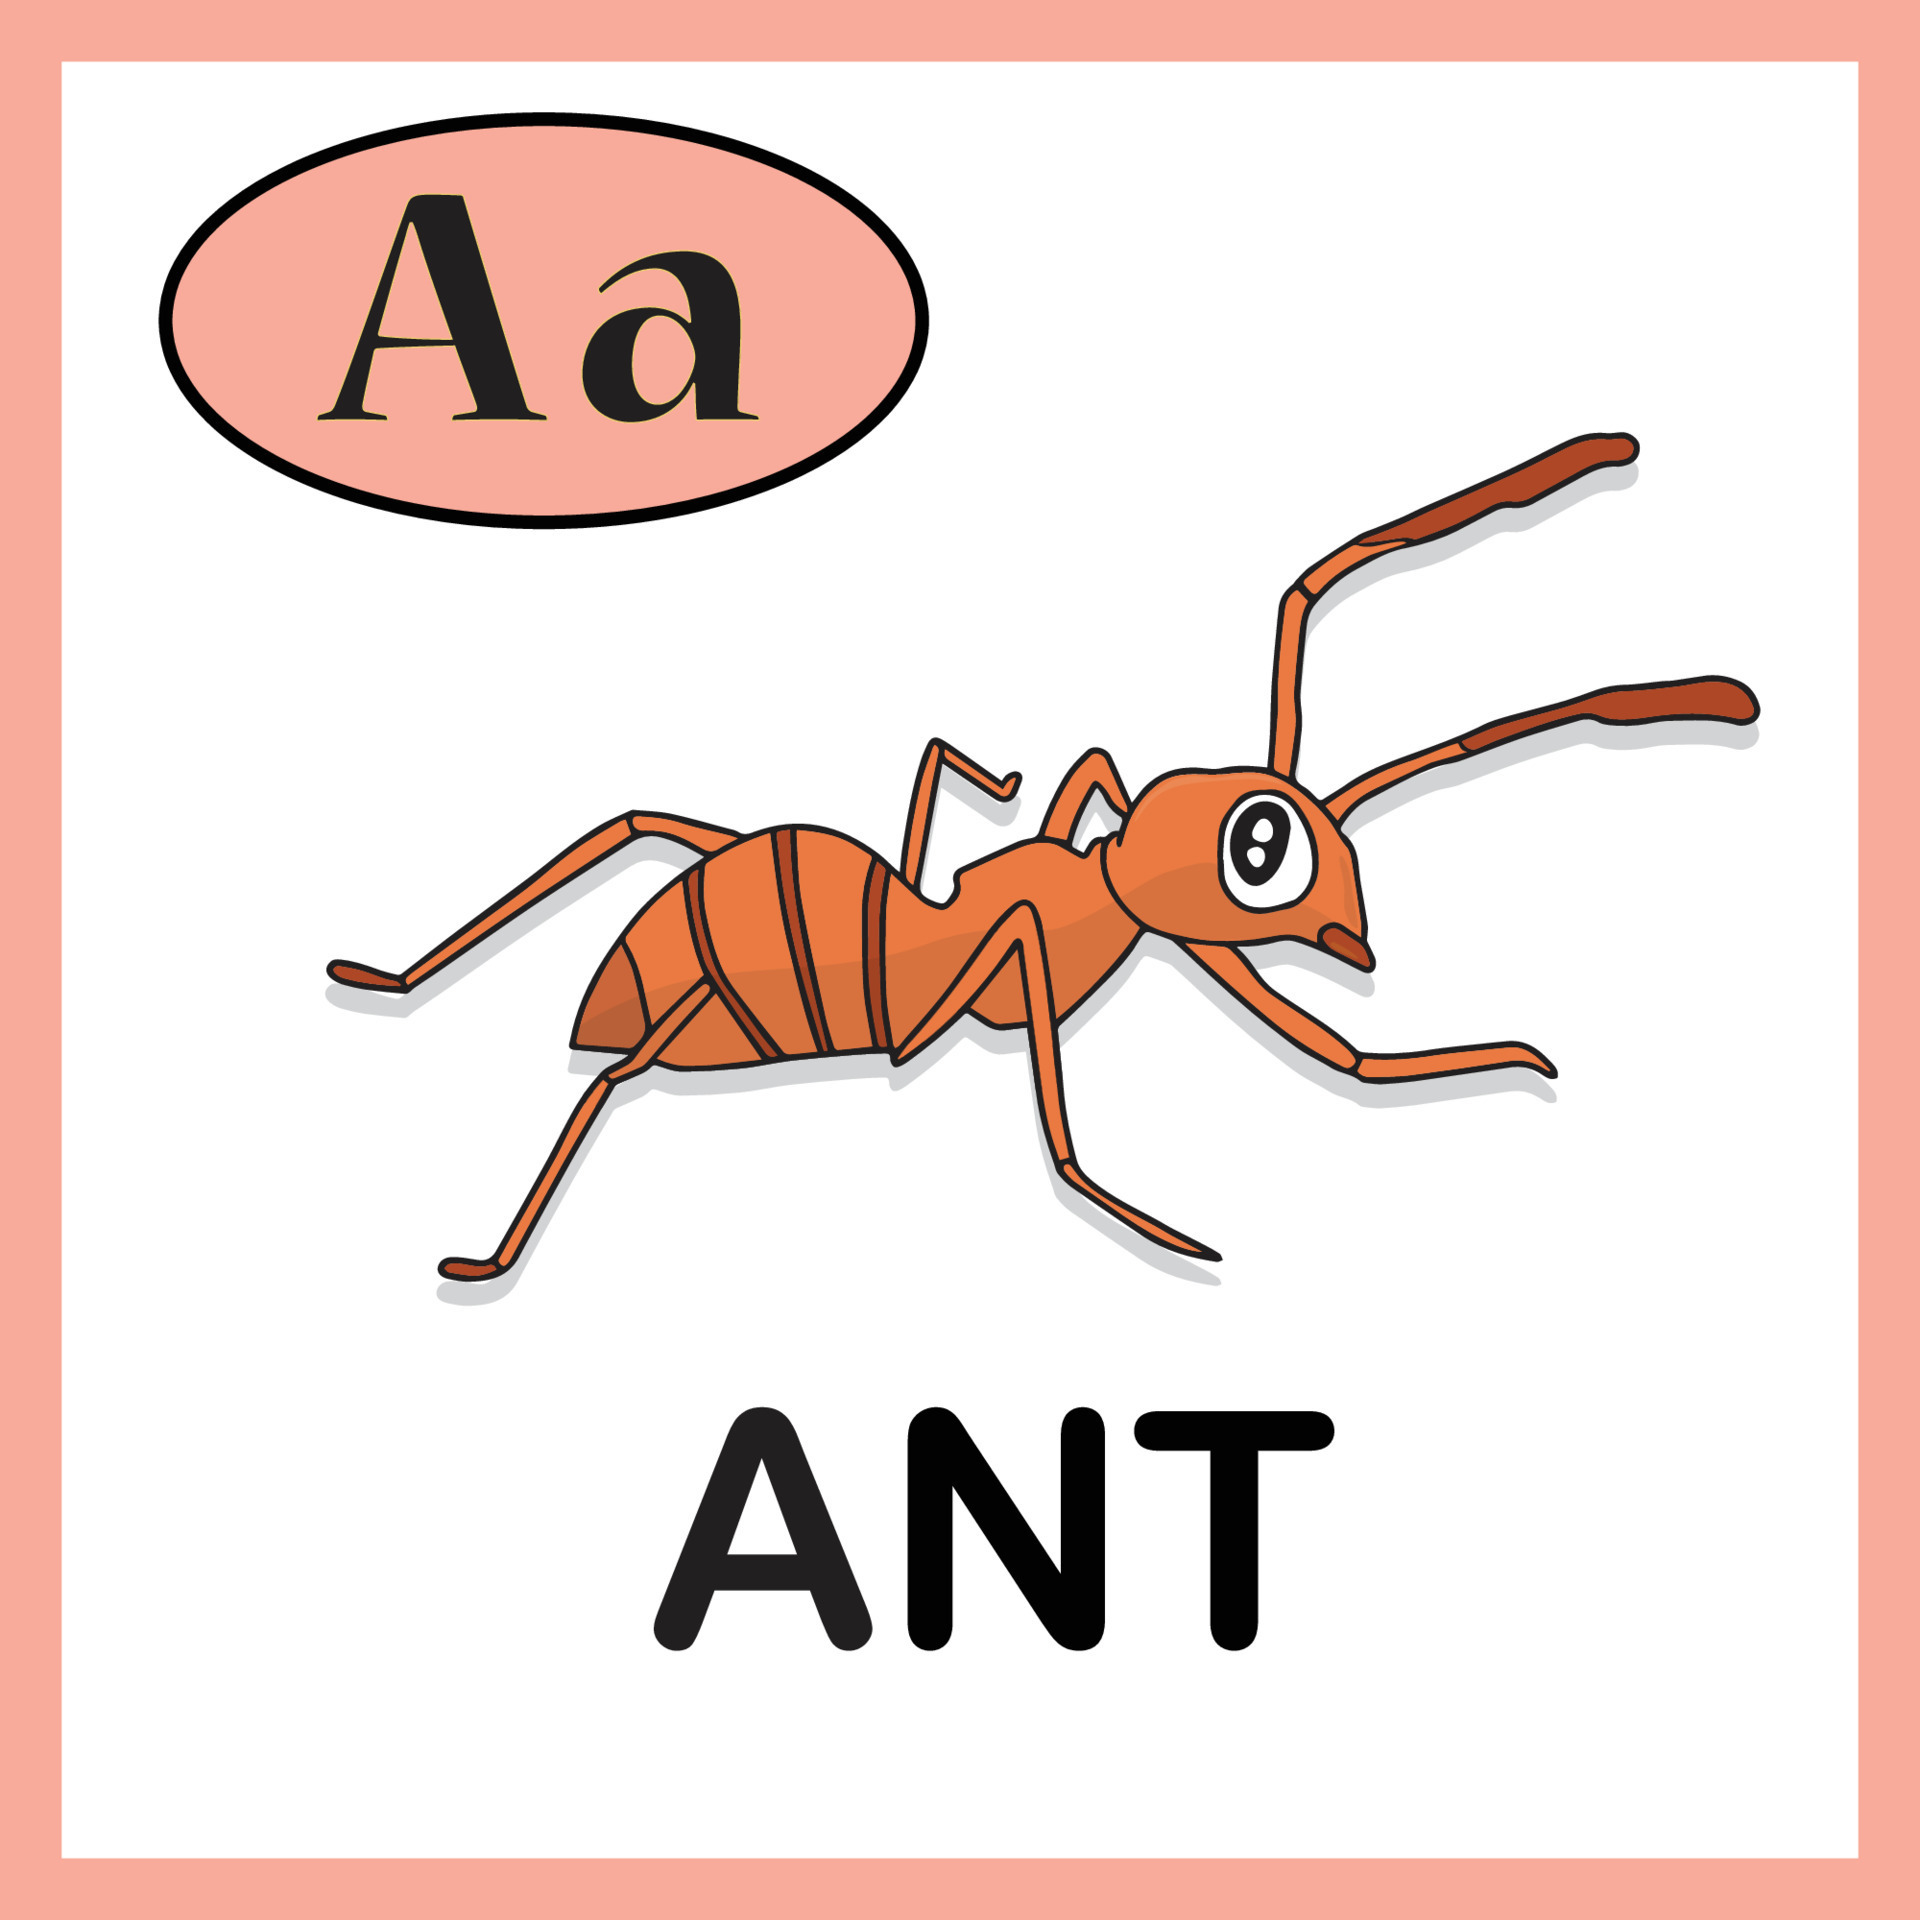 Ants vocabulary